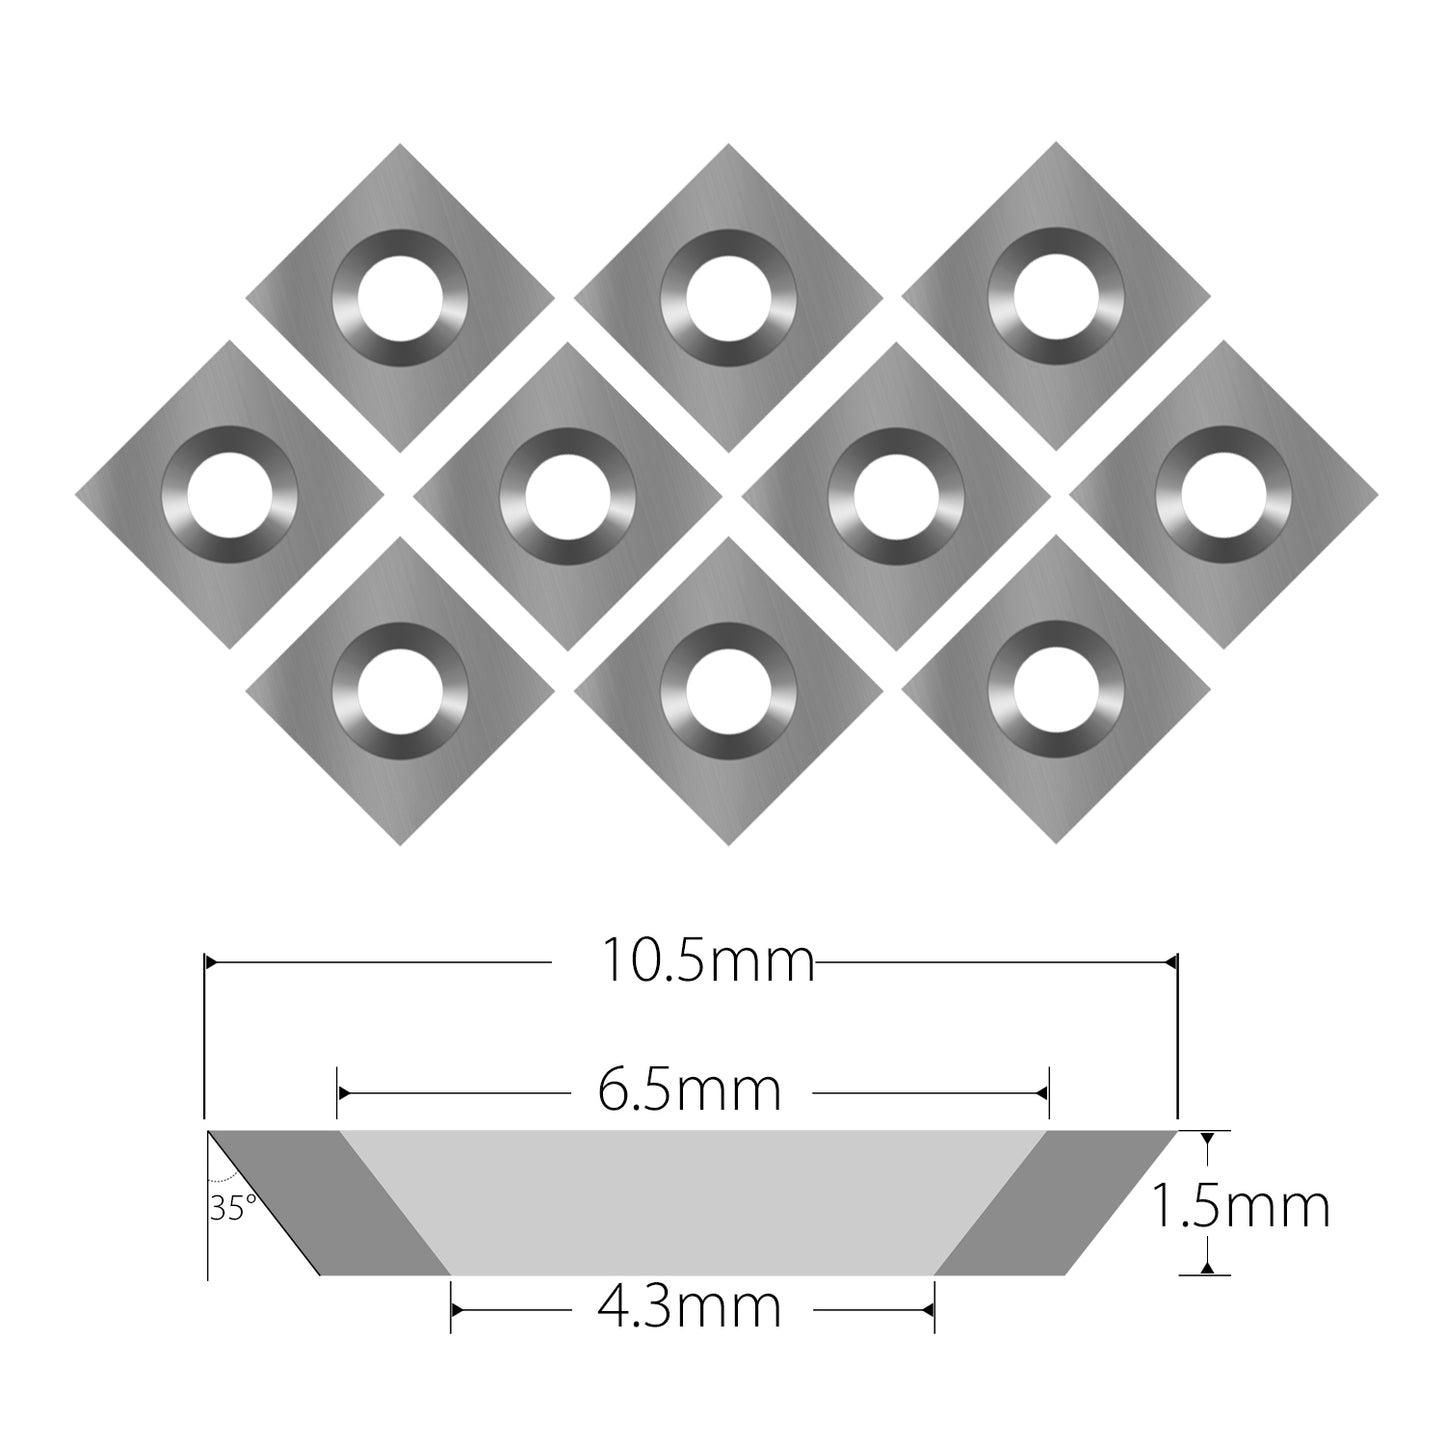 10.5 mm square carbide insert cutter 10.5 x 10.5 x 1.5 mm